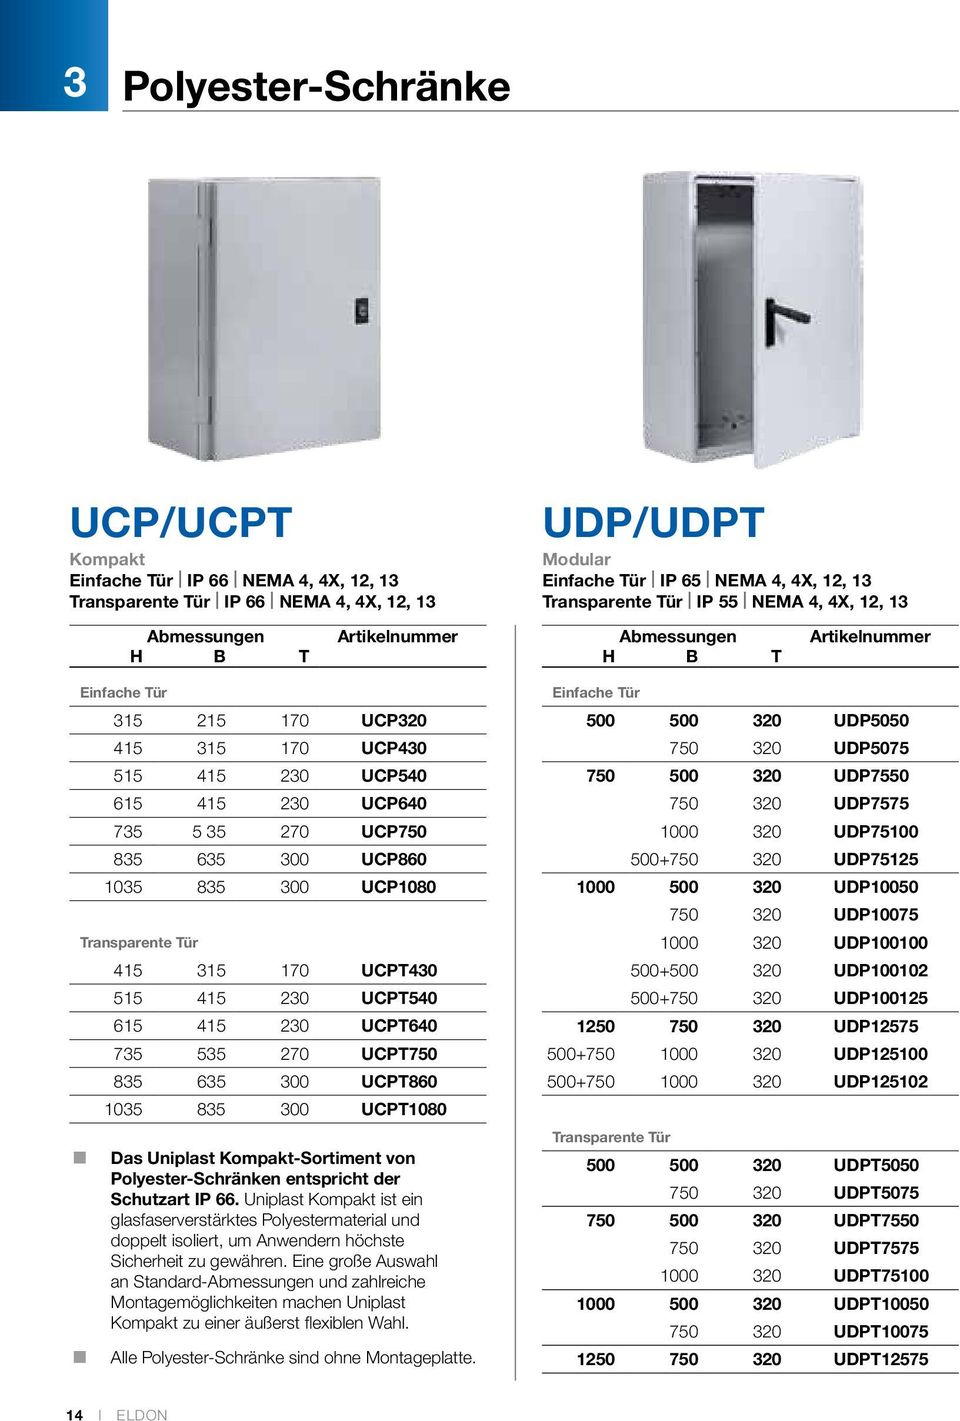 UCPT1080 Das Uniplast Kompakt-Sortiment von Polyester-Schränken entspricht der Schutzart IP 66.